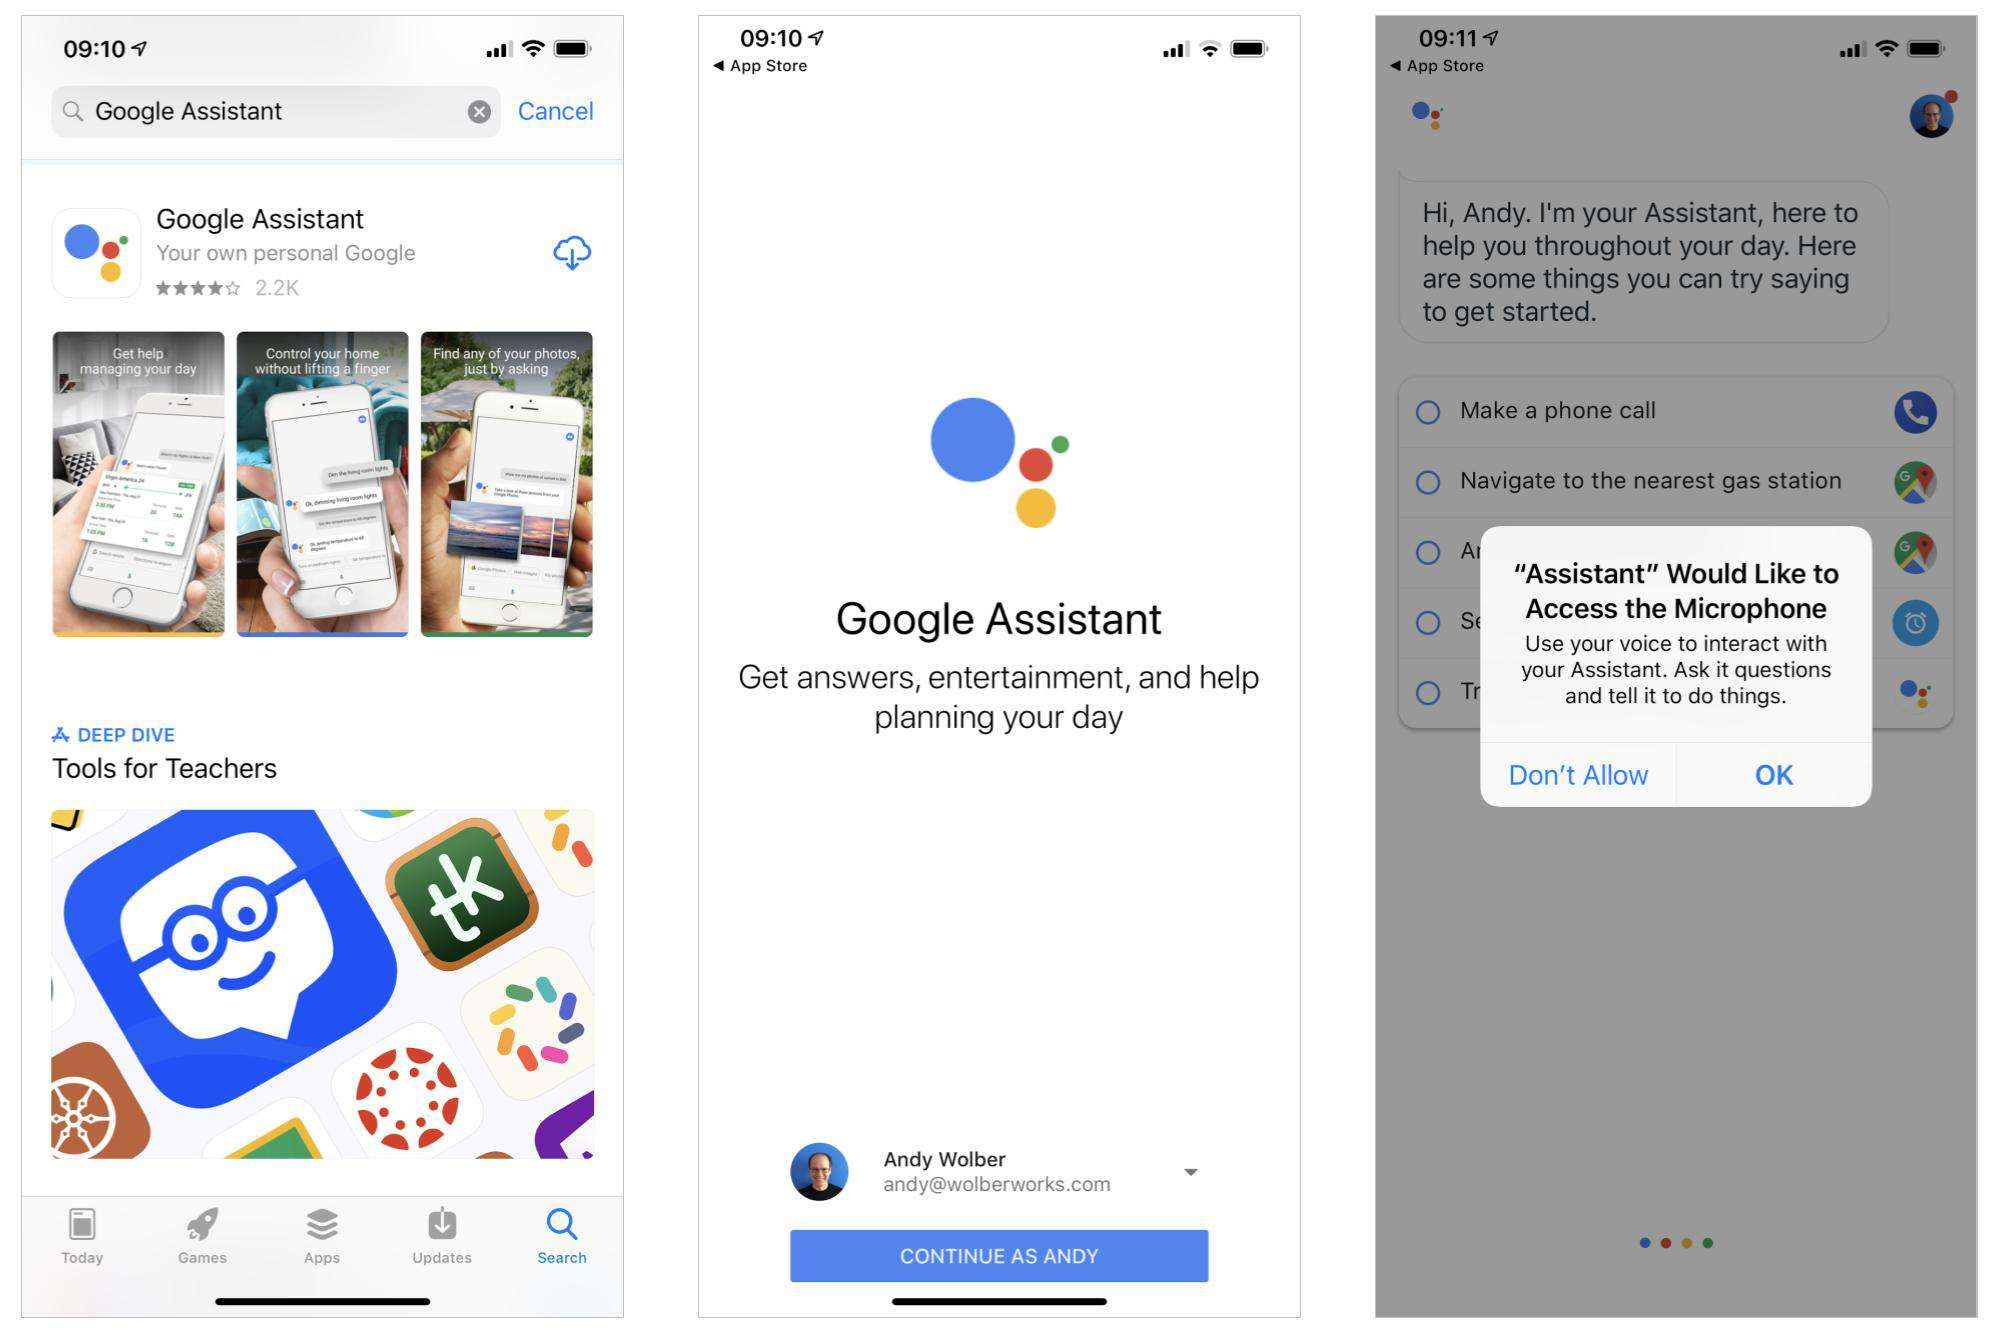 3 снимка экрана: (слева) Google Assistant в iOS App Store, (в центре) начальный начальный экран Google Assistant, (справа) запрос помощника для разрешения доступа к микрофону